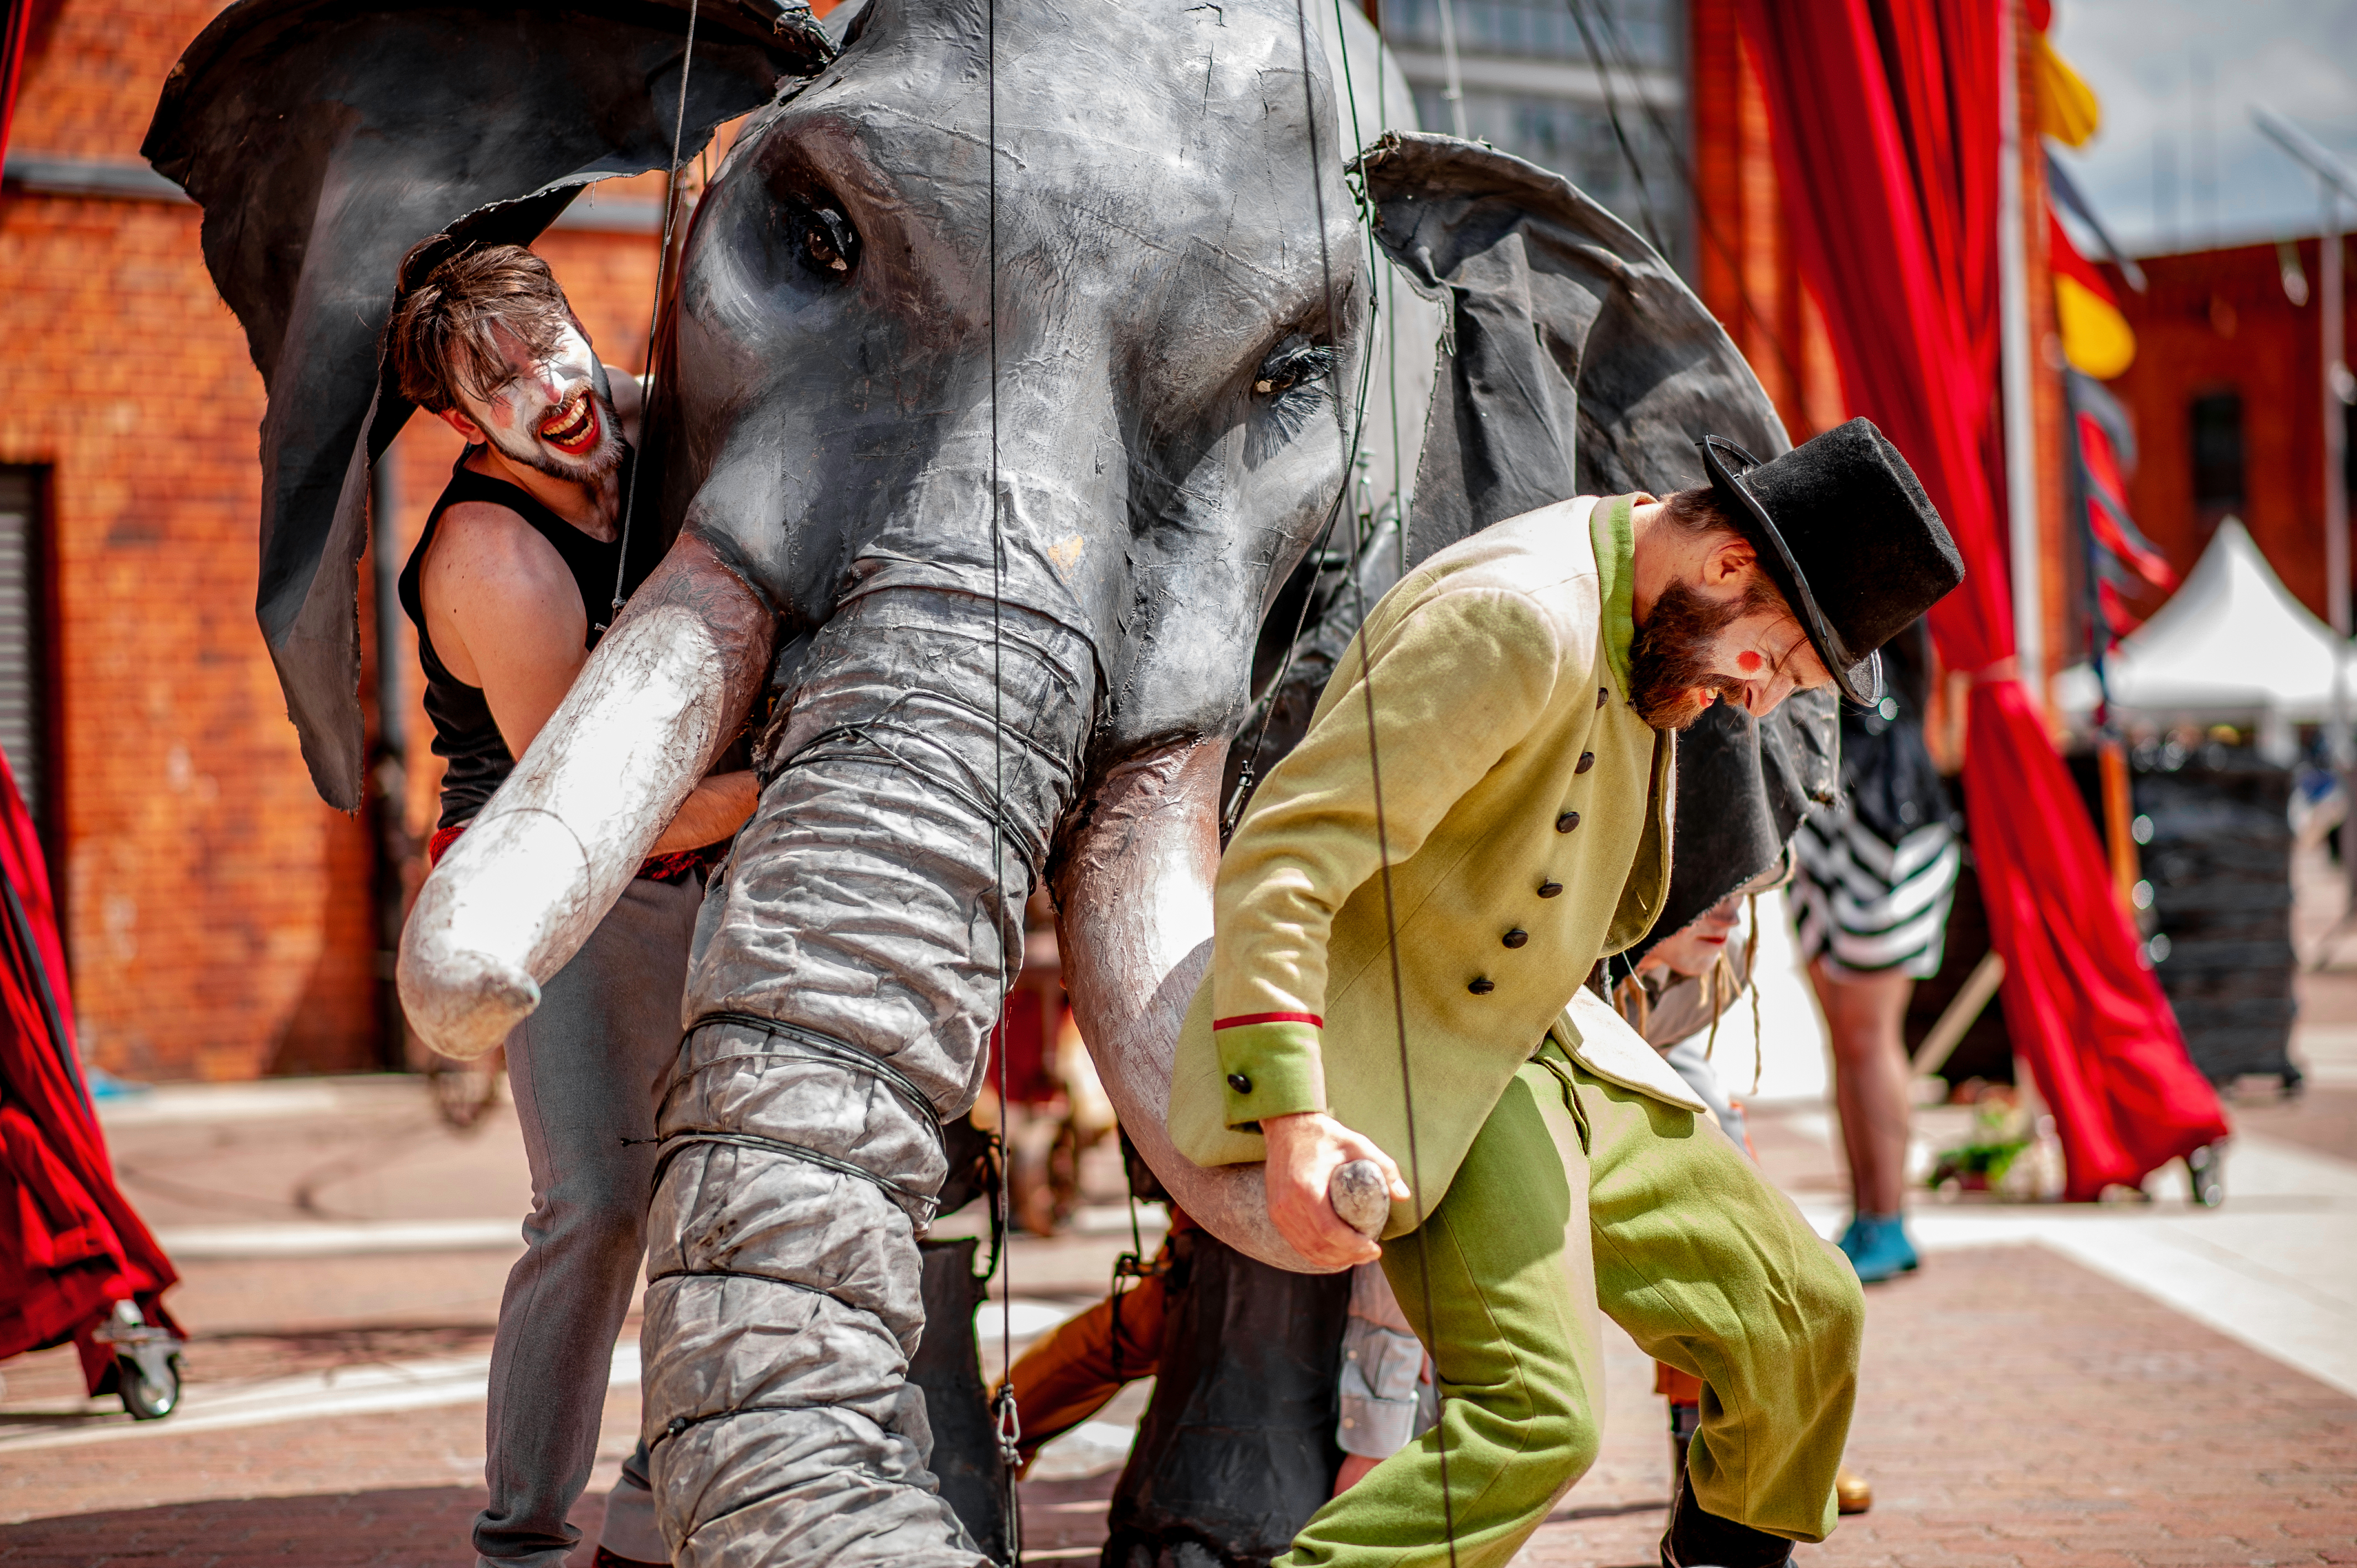 Eine riesige Elefanten-Marionnette wird von zwei Männern in Clownsmasken gestützt.